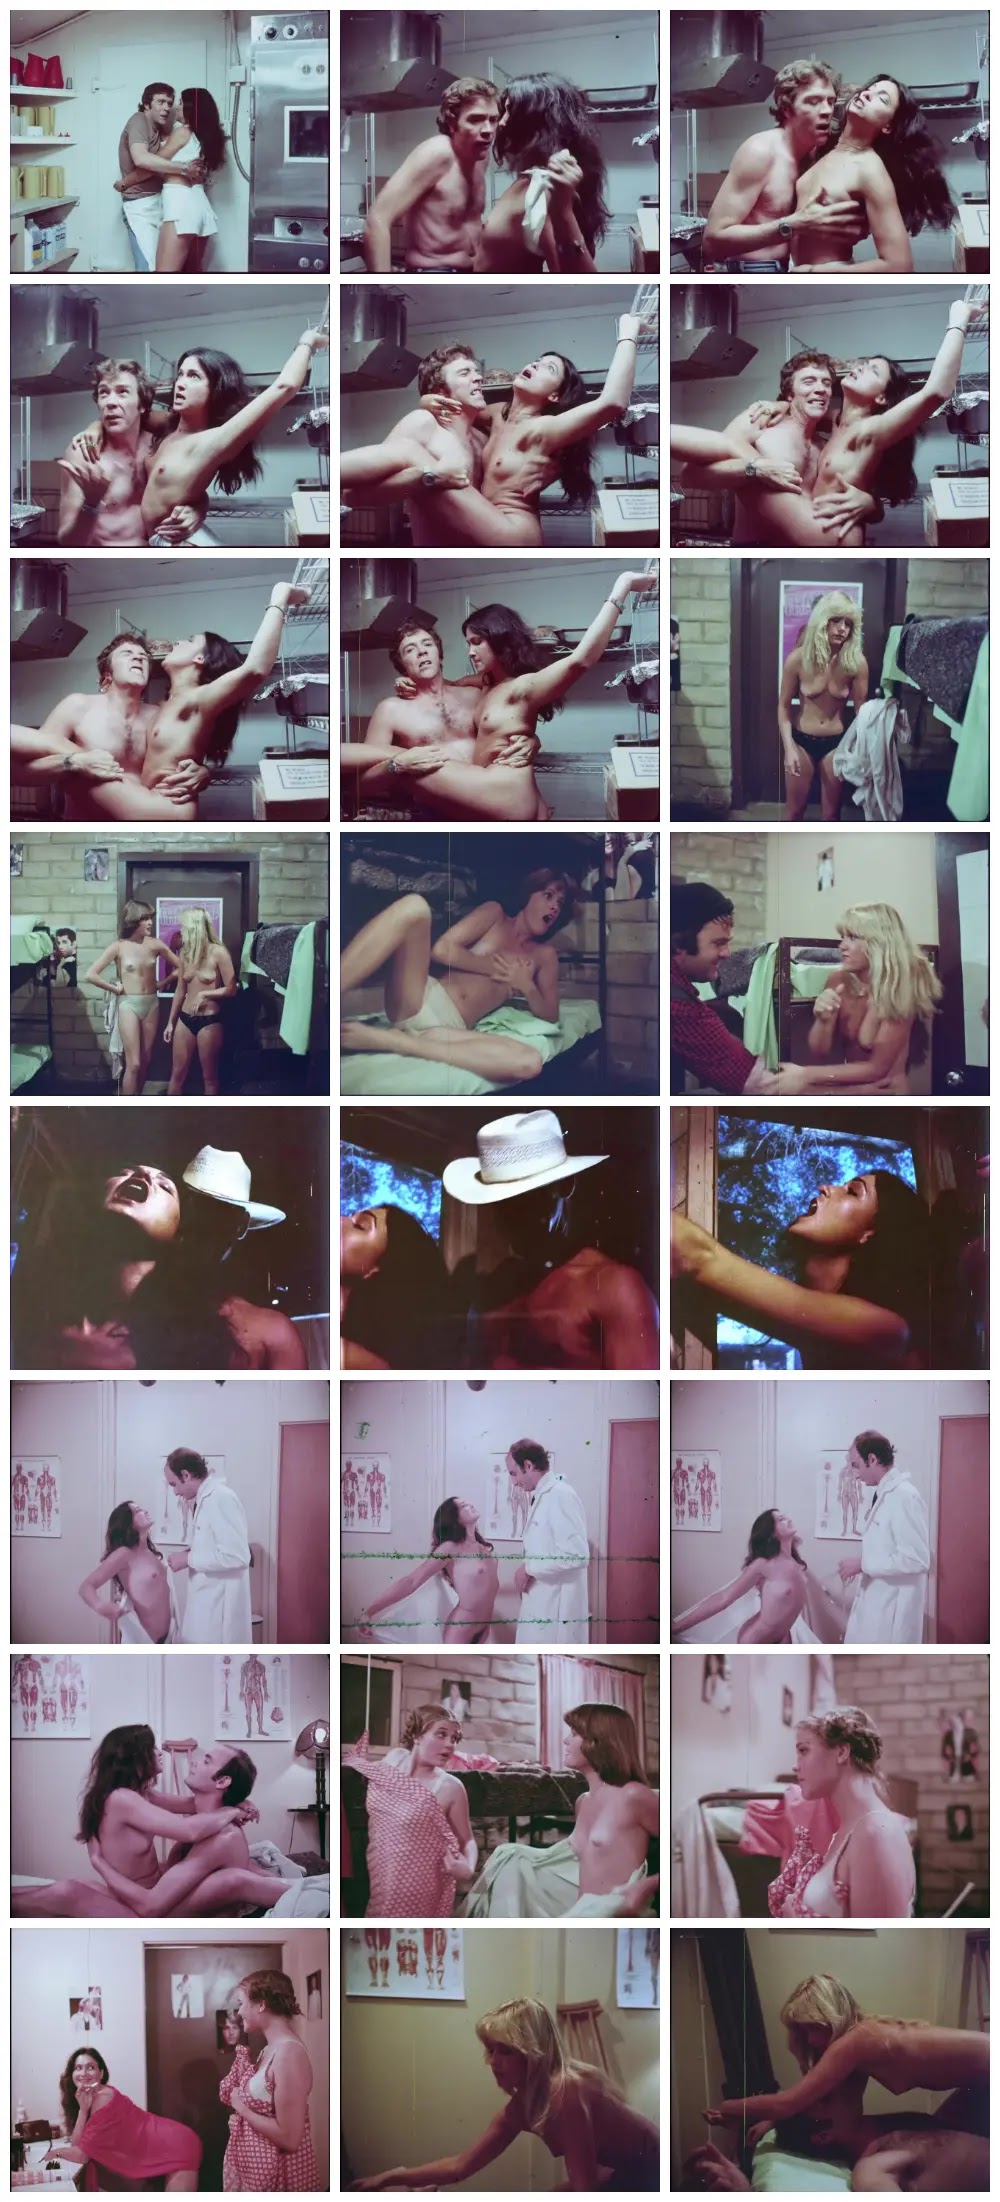 Summer Camp (1979) EroGarga Watch Free Vintage Porn Movies, Retro Sex Videos, Mobile Porn